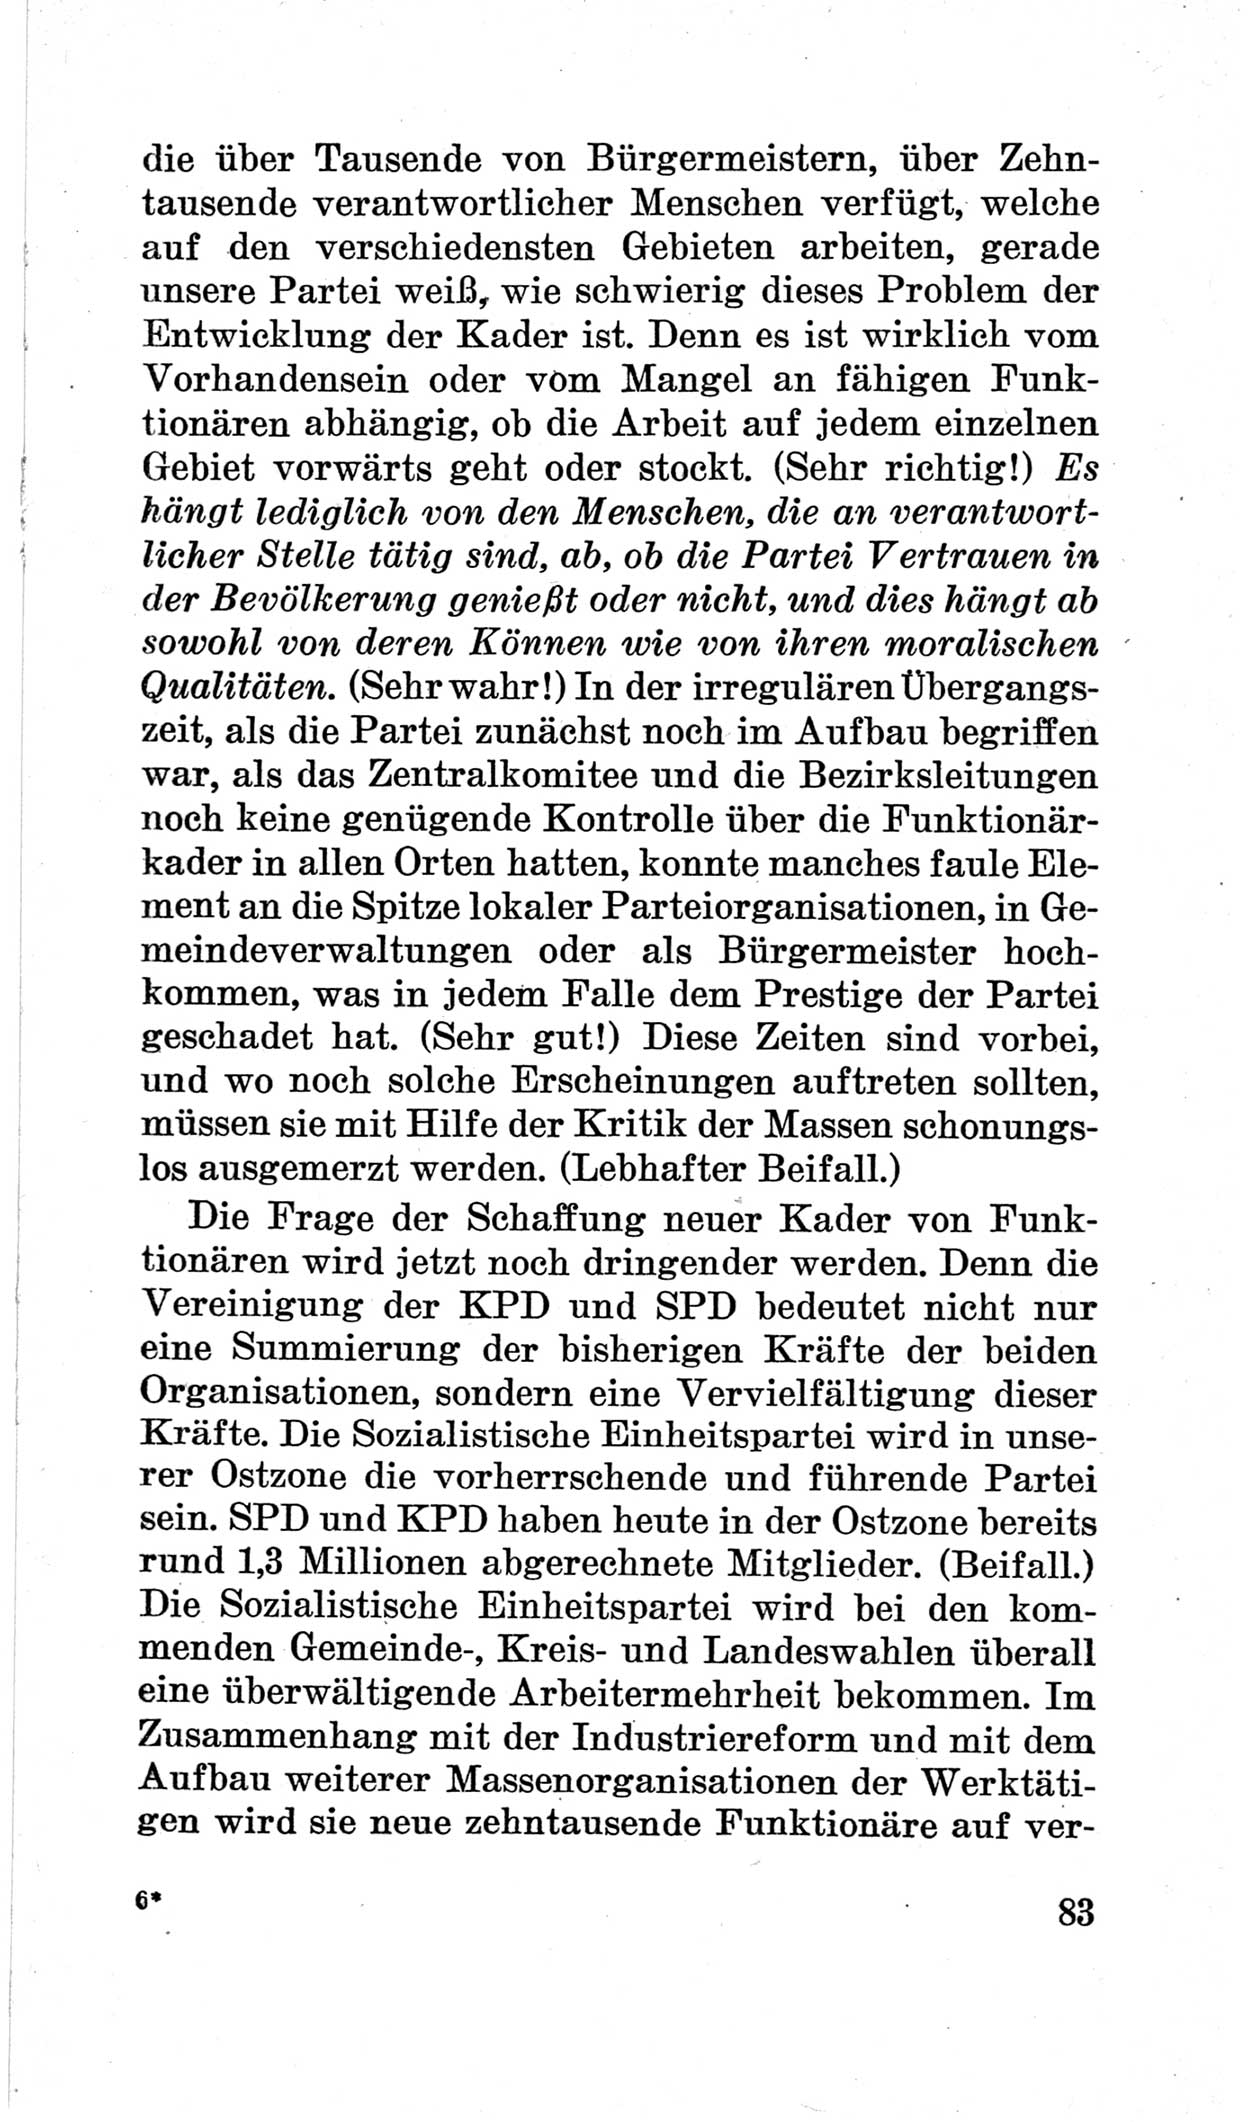 Bericht über die Verhandlungen des 15. Parteitages der Kommunistischen Partei Deutschlands (KPD) [Sowjetische Besatzungszone (SBZ) Deutschlands] am 19. und 20. April 1946 in Berlin, Seite 83 (Ber. Verh. 15. PT KPD SBZ Dtl. 1946, S. 83)